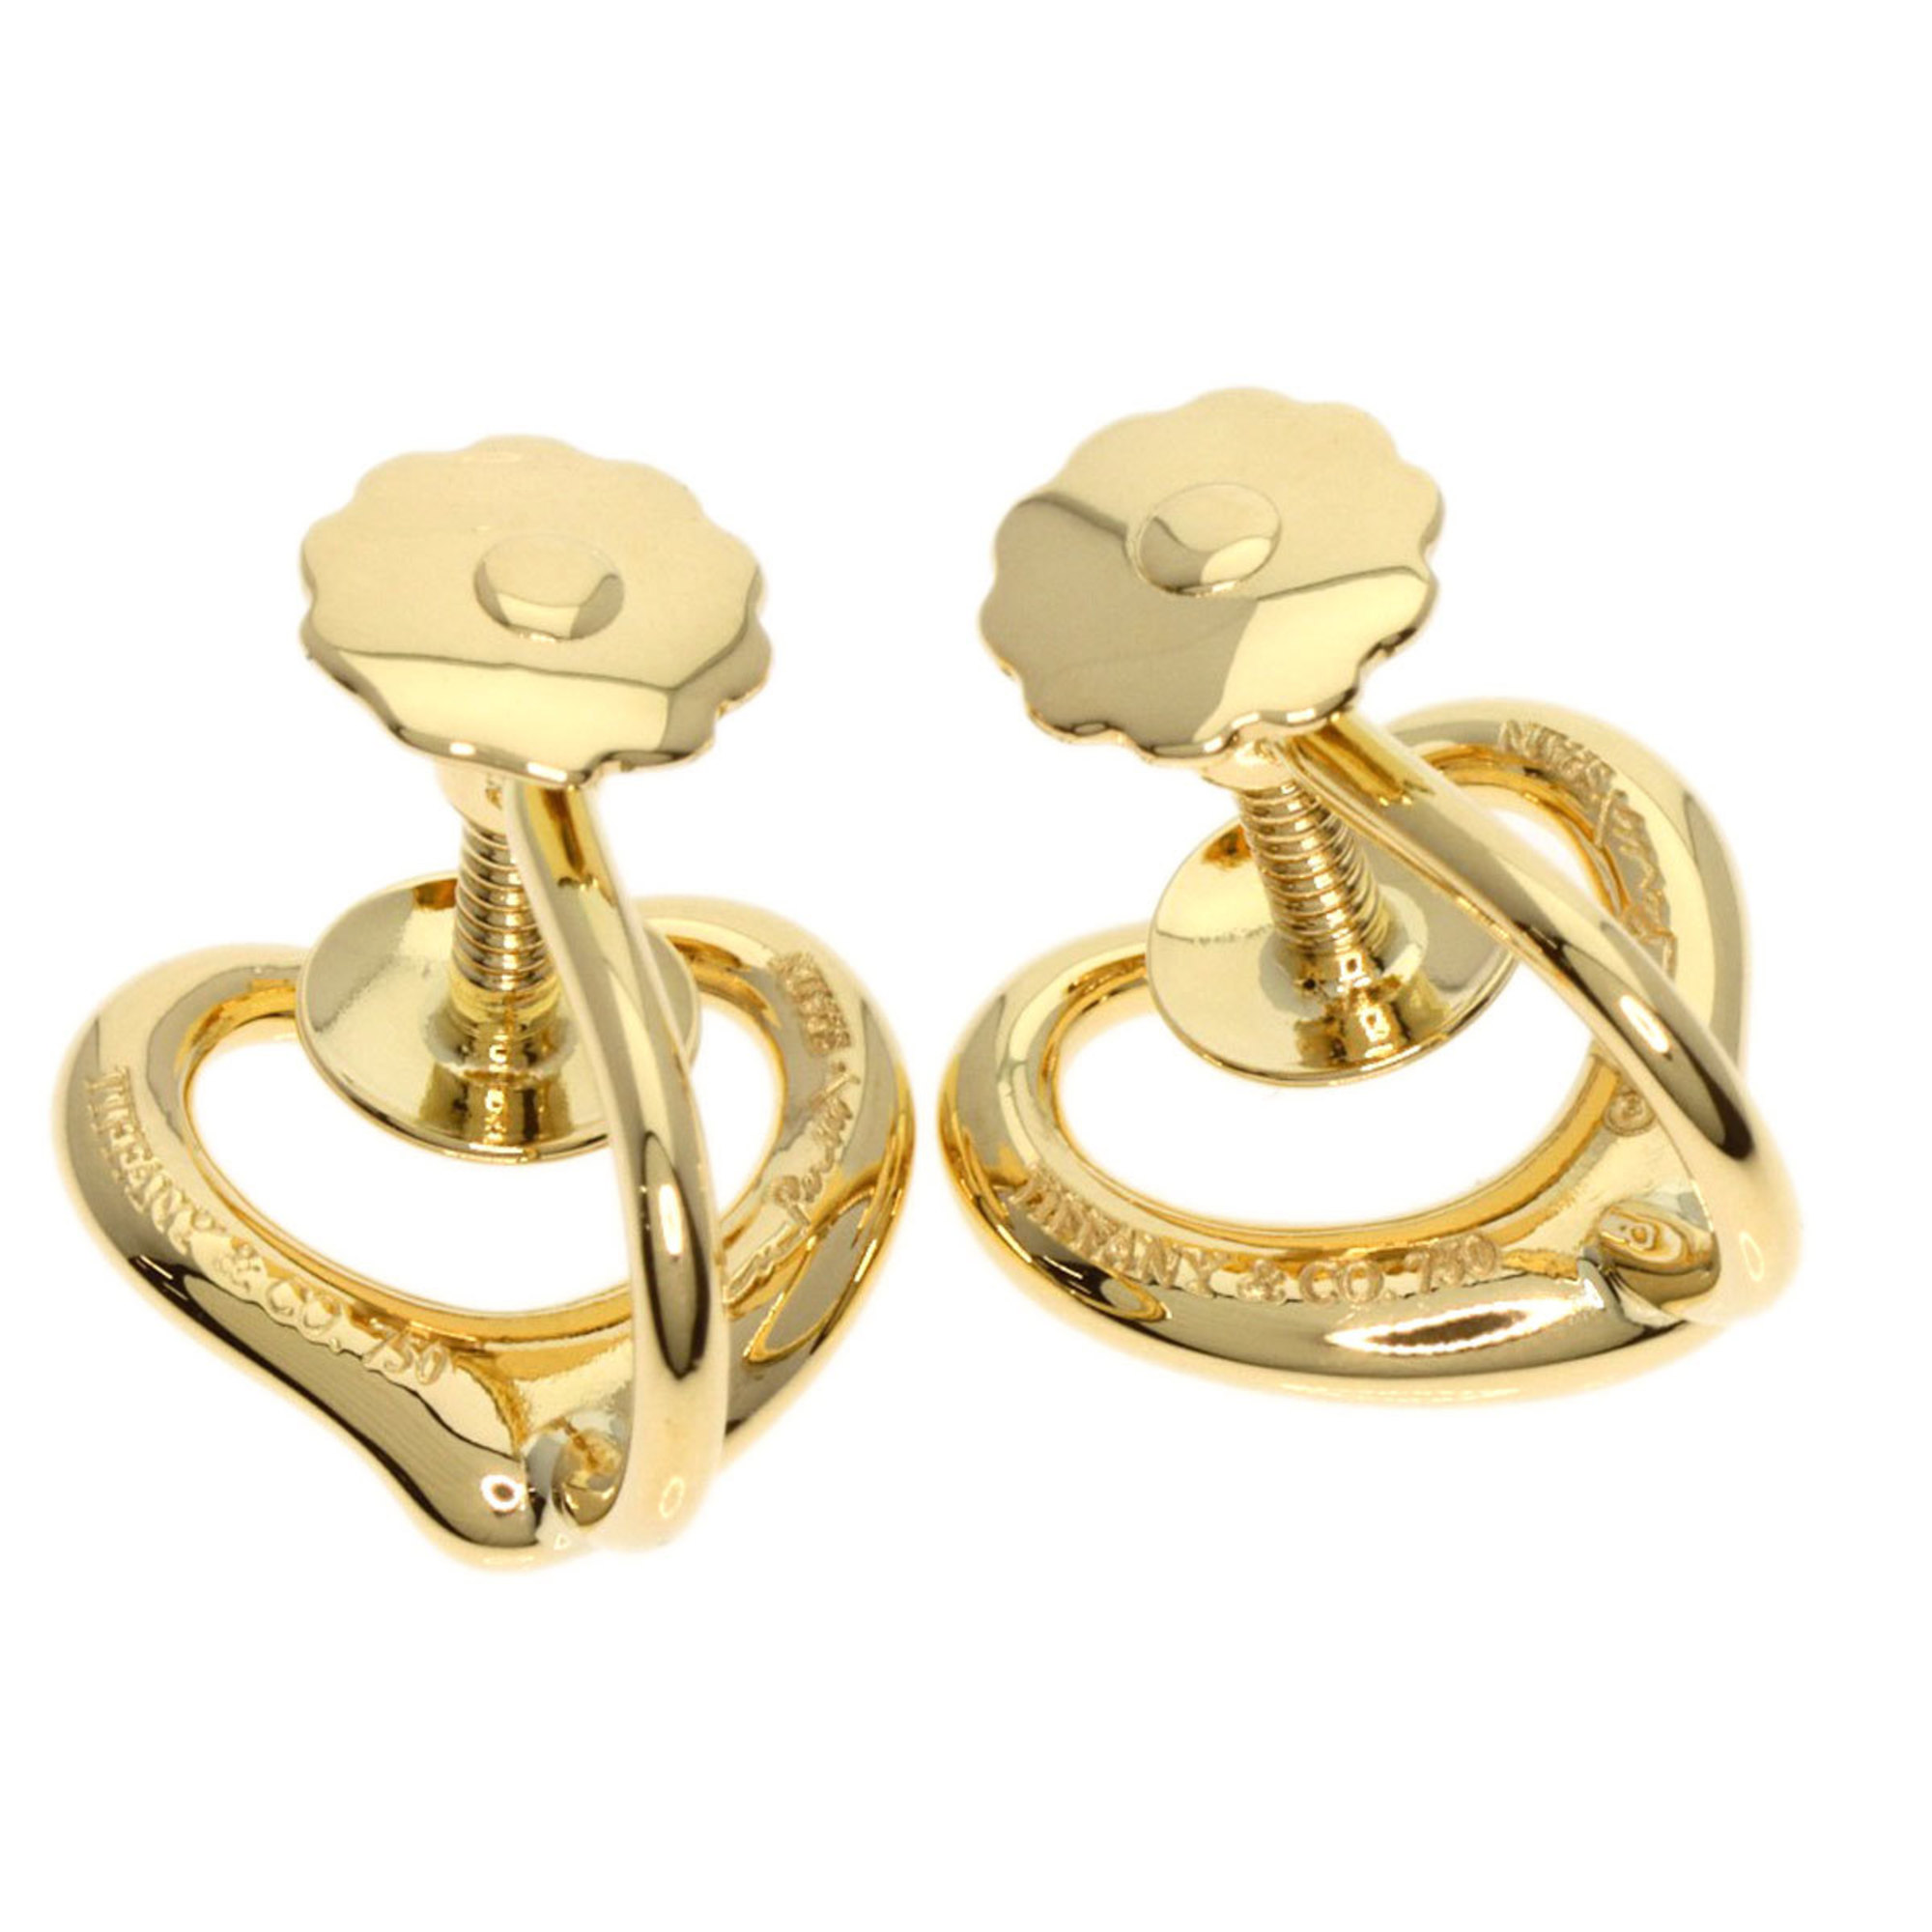 Tiffany Heart Earrings, 18k Yellow Gold, Women's, TIFFANY&Co.